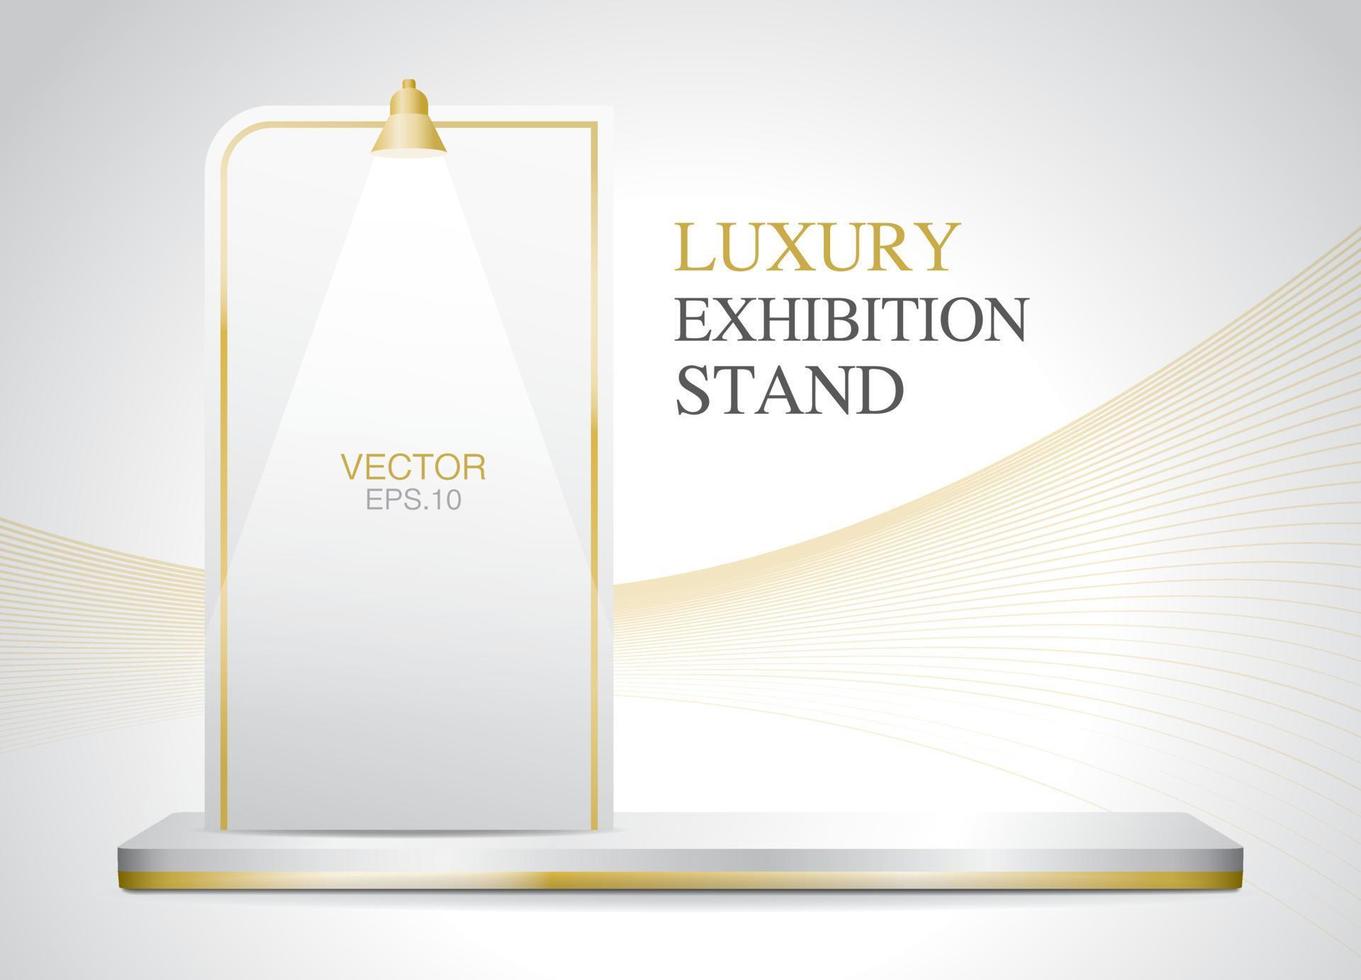 etapa de producto larga de lujo vacía con tablero de exposición vector de ilustración 3d para poner su objeto en el tema de color blanco y dorado.